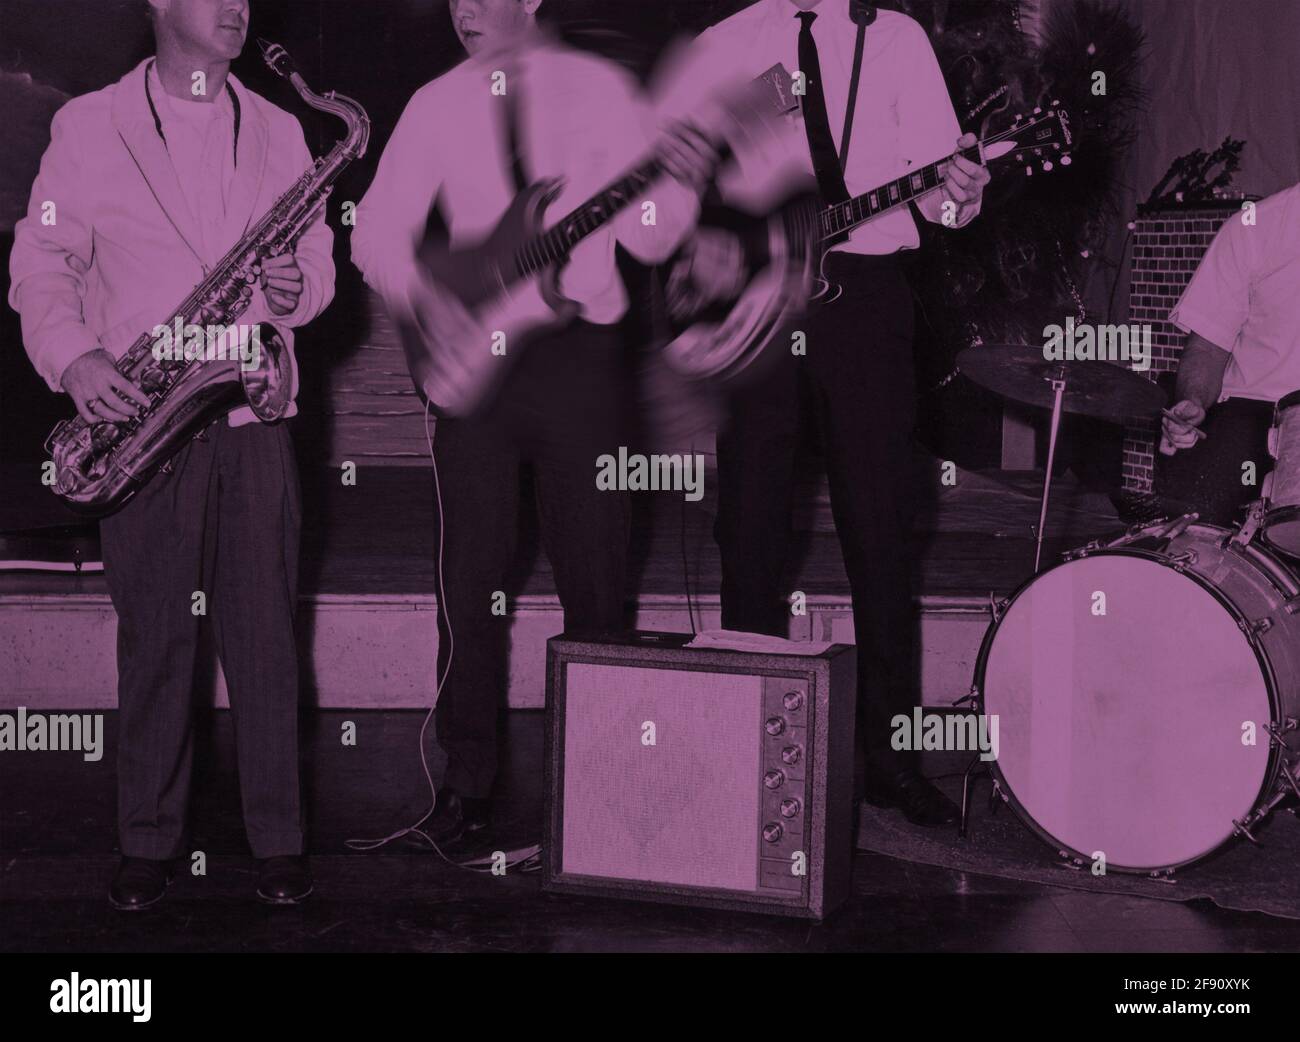 Una fotografia vintage della fine degli anni '50 o dei primi anni '60 di una rock and roll band universitaria che gioca per un promo colorito digitalmente e alterato per effetto artistico. Foto Stock